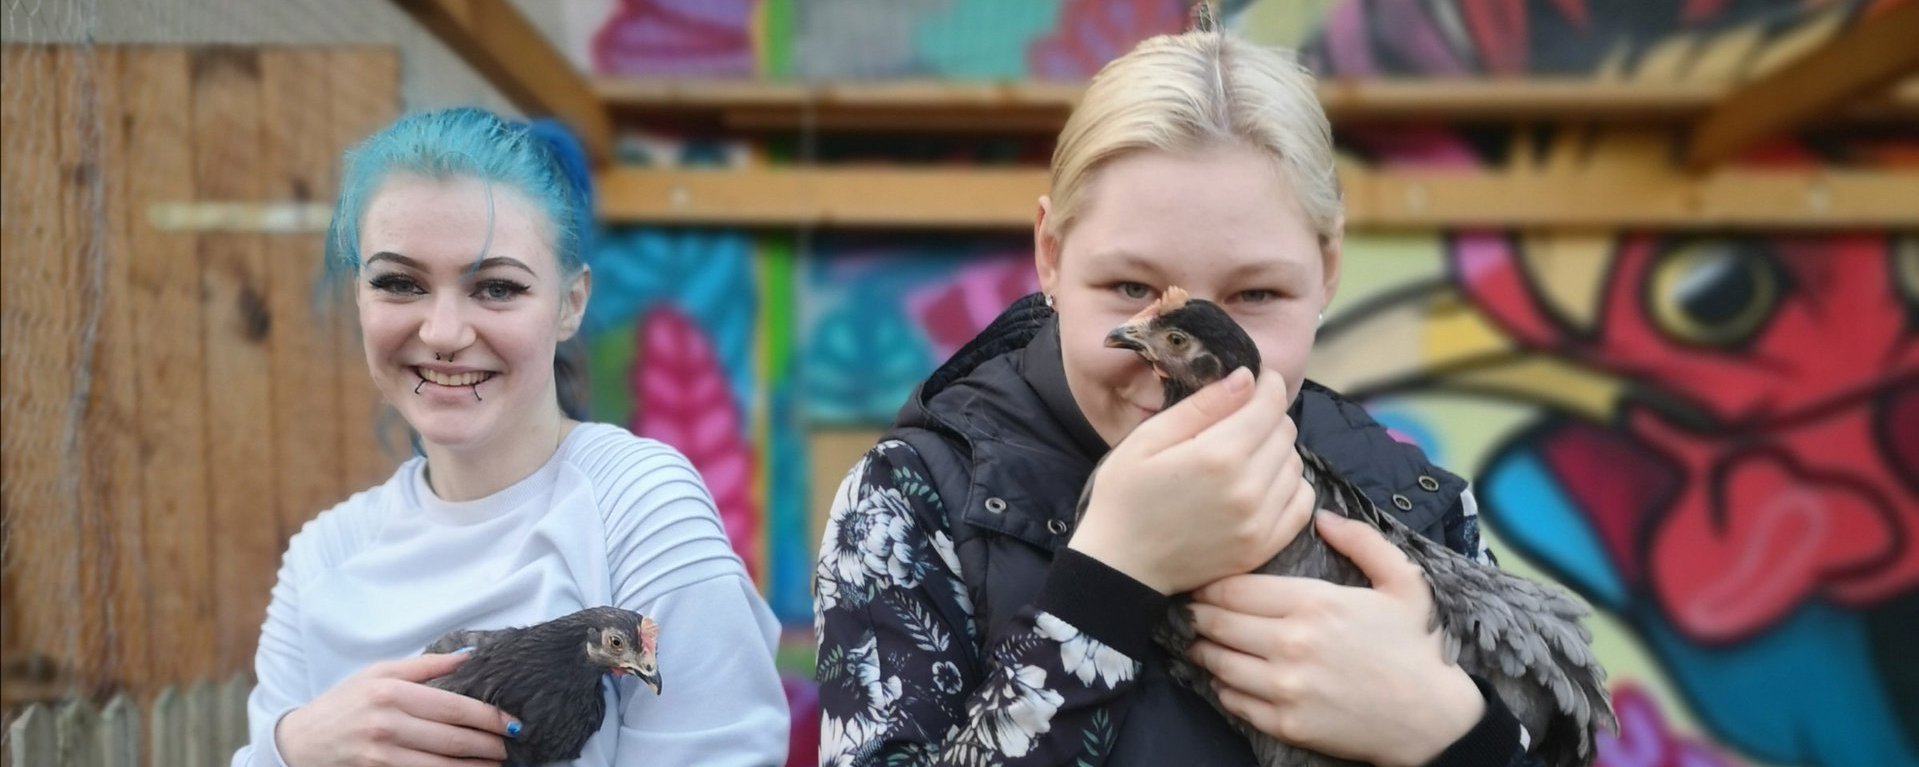 Zwei jugendliche Mädchen halten lächelnd je ein schwarzes Huhn auf dem Arm